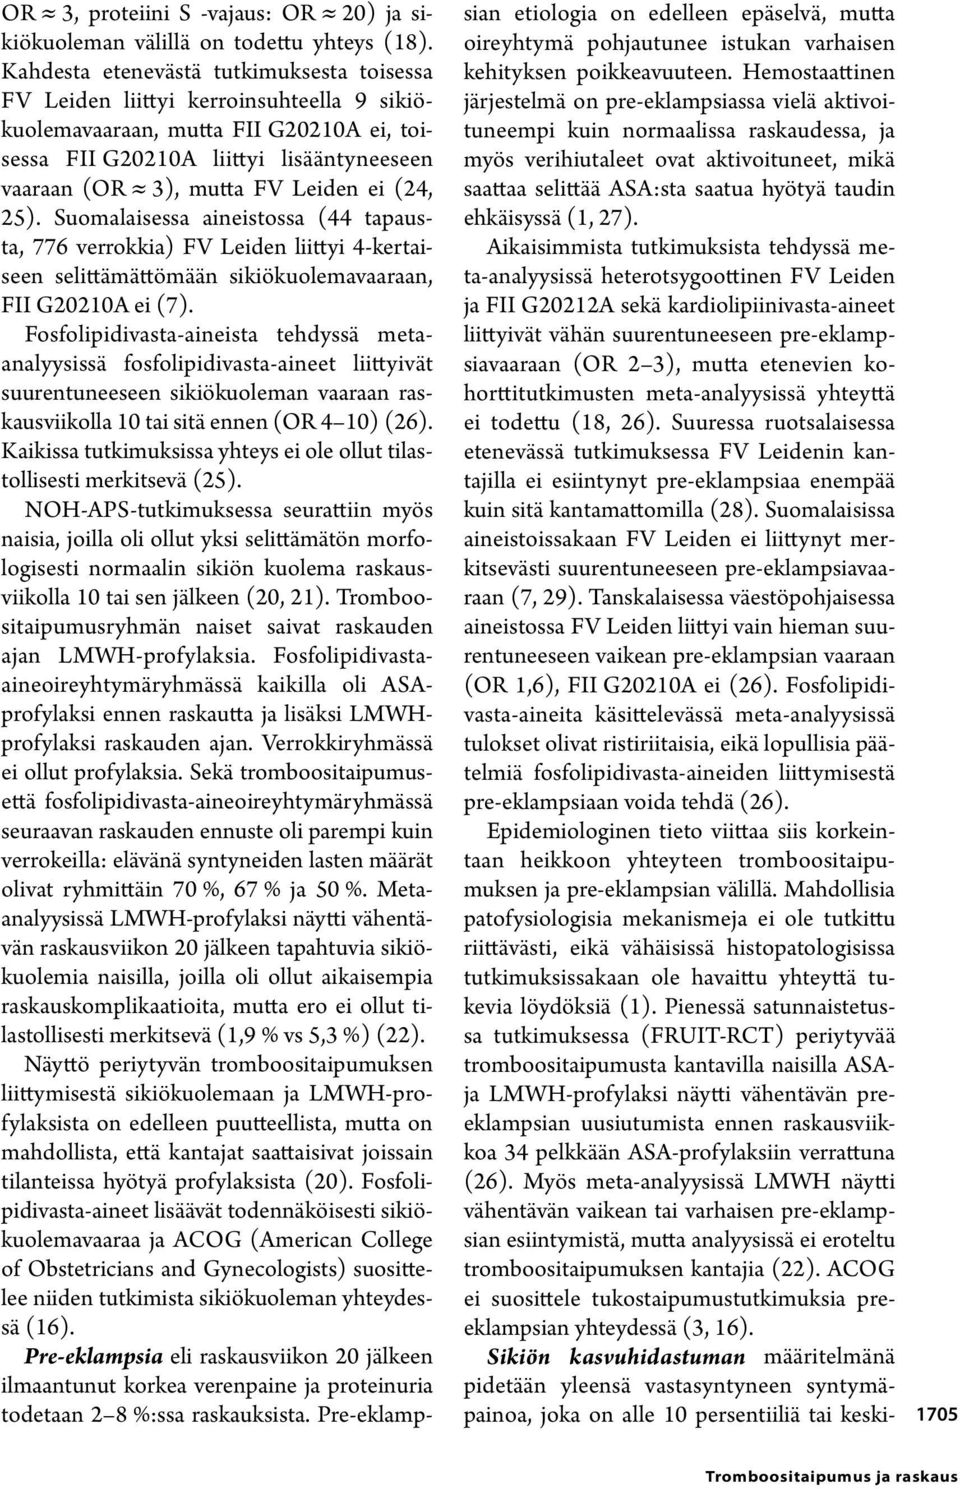 ei (24, 25). Suomalaisessa aineistossa (44 tapausta, 776 verrokkia) FV Leiden liittyi 4-kertaiseen selittämättömään sikiökuolemavaaraan, FII G20210A ei (7).